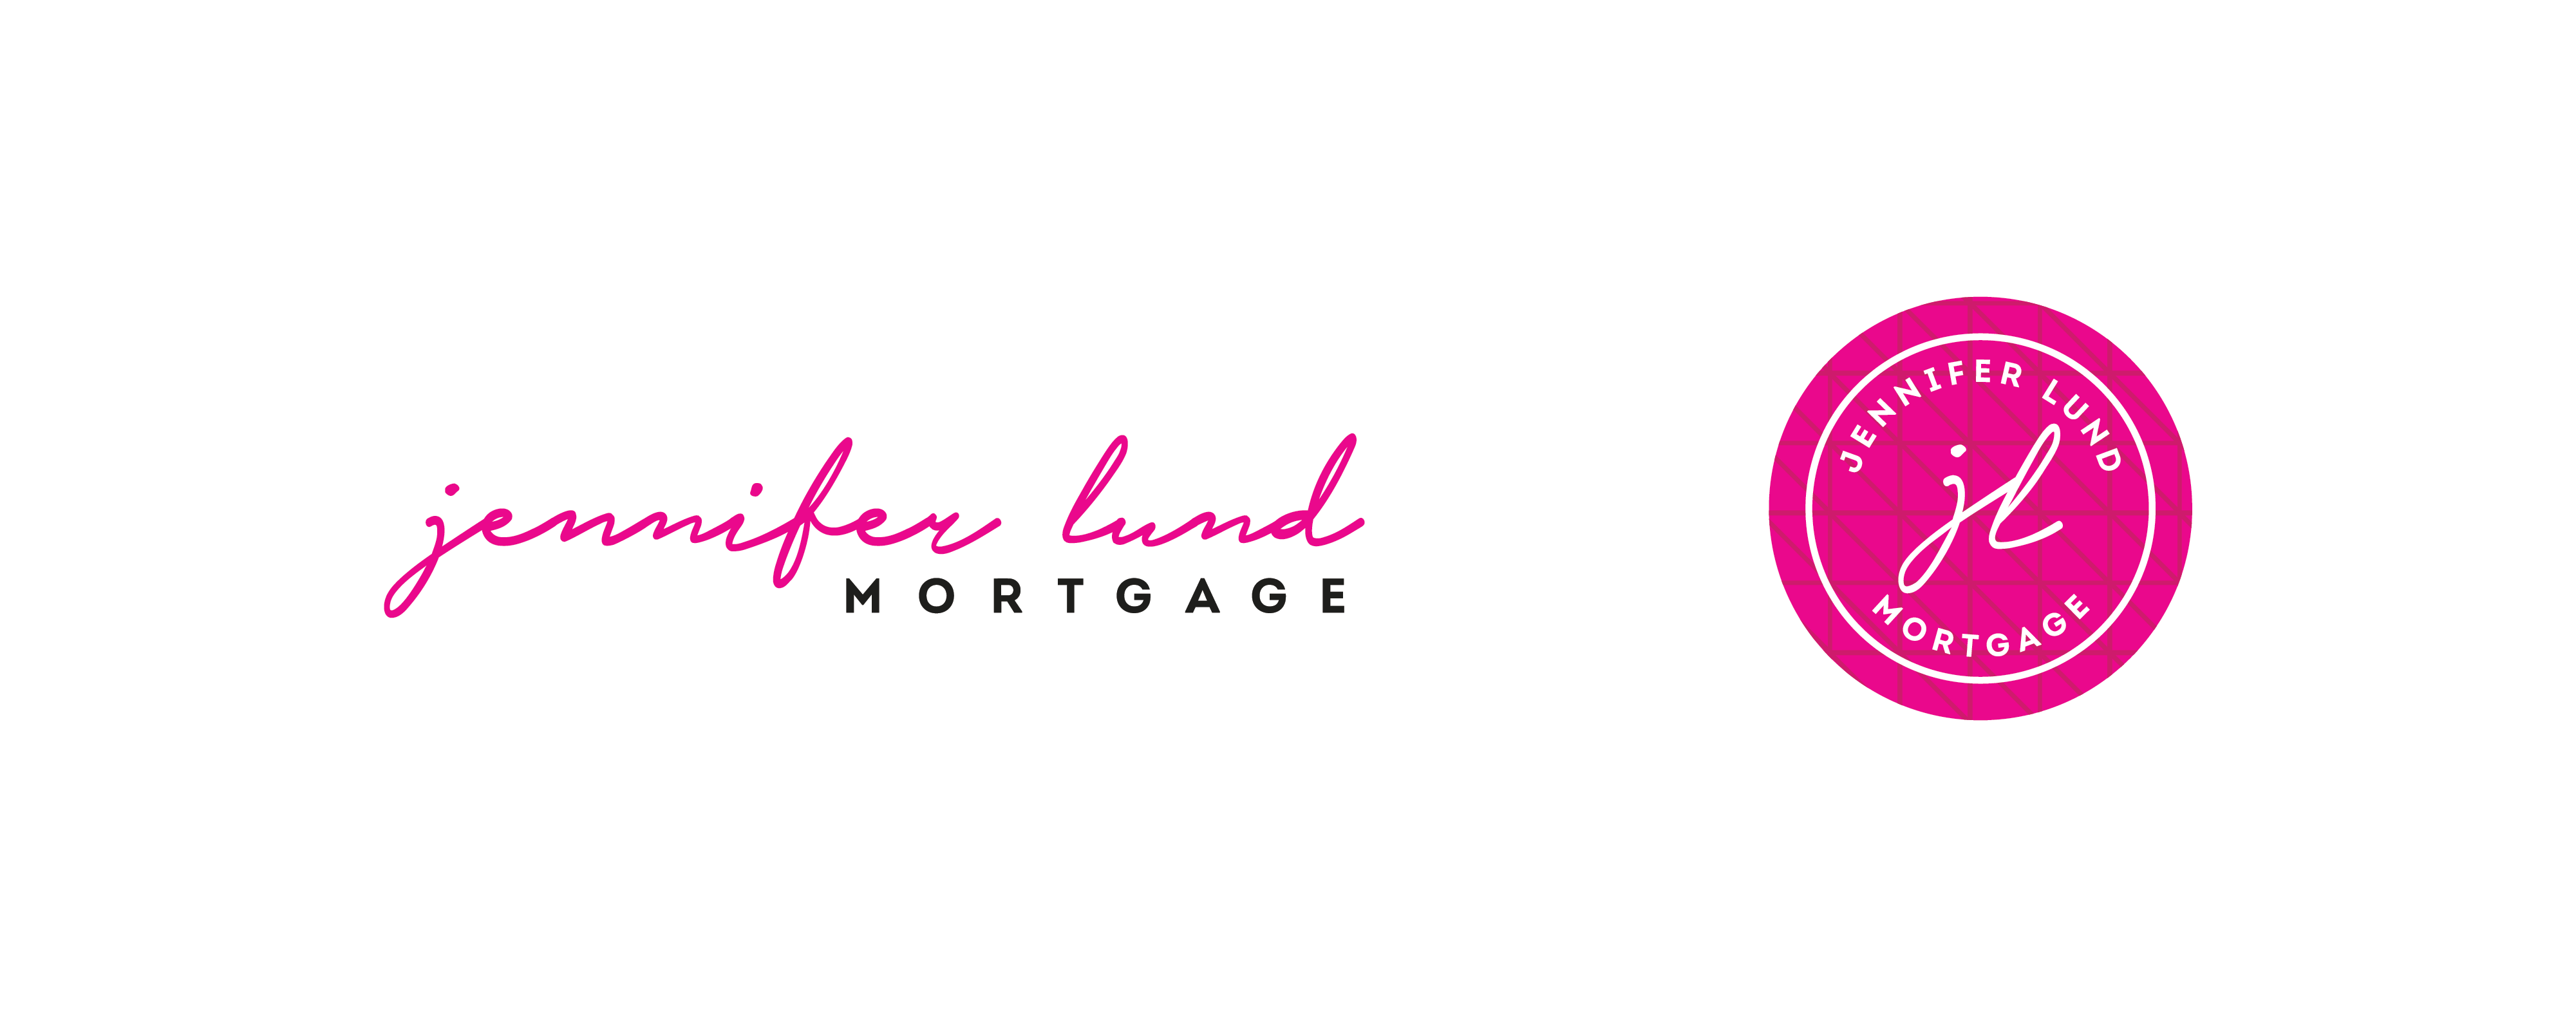 after design for mortgage broker logo Jennifer Lund